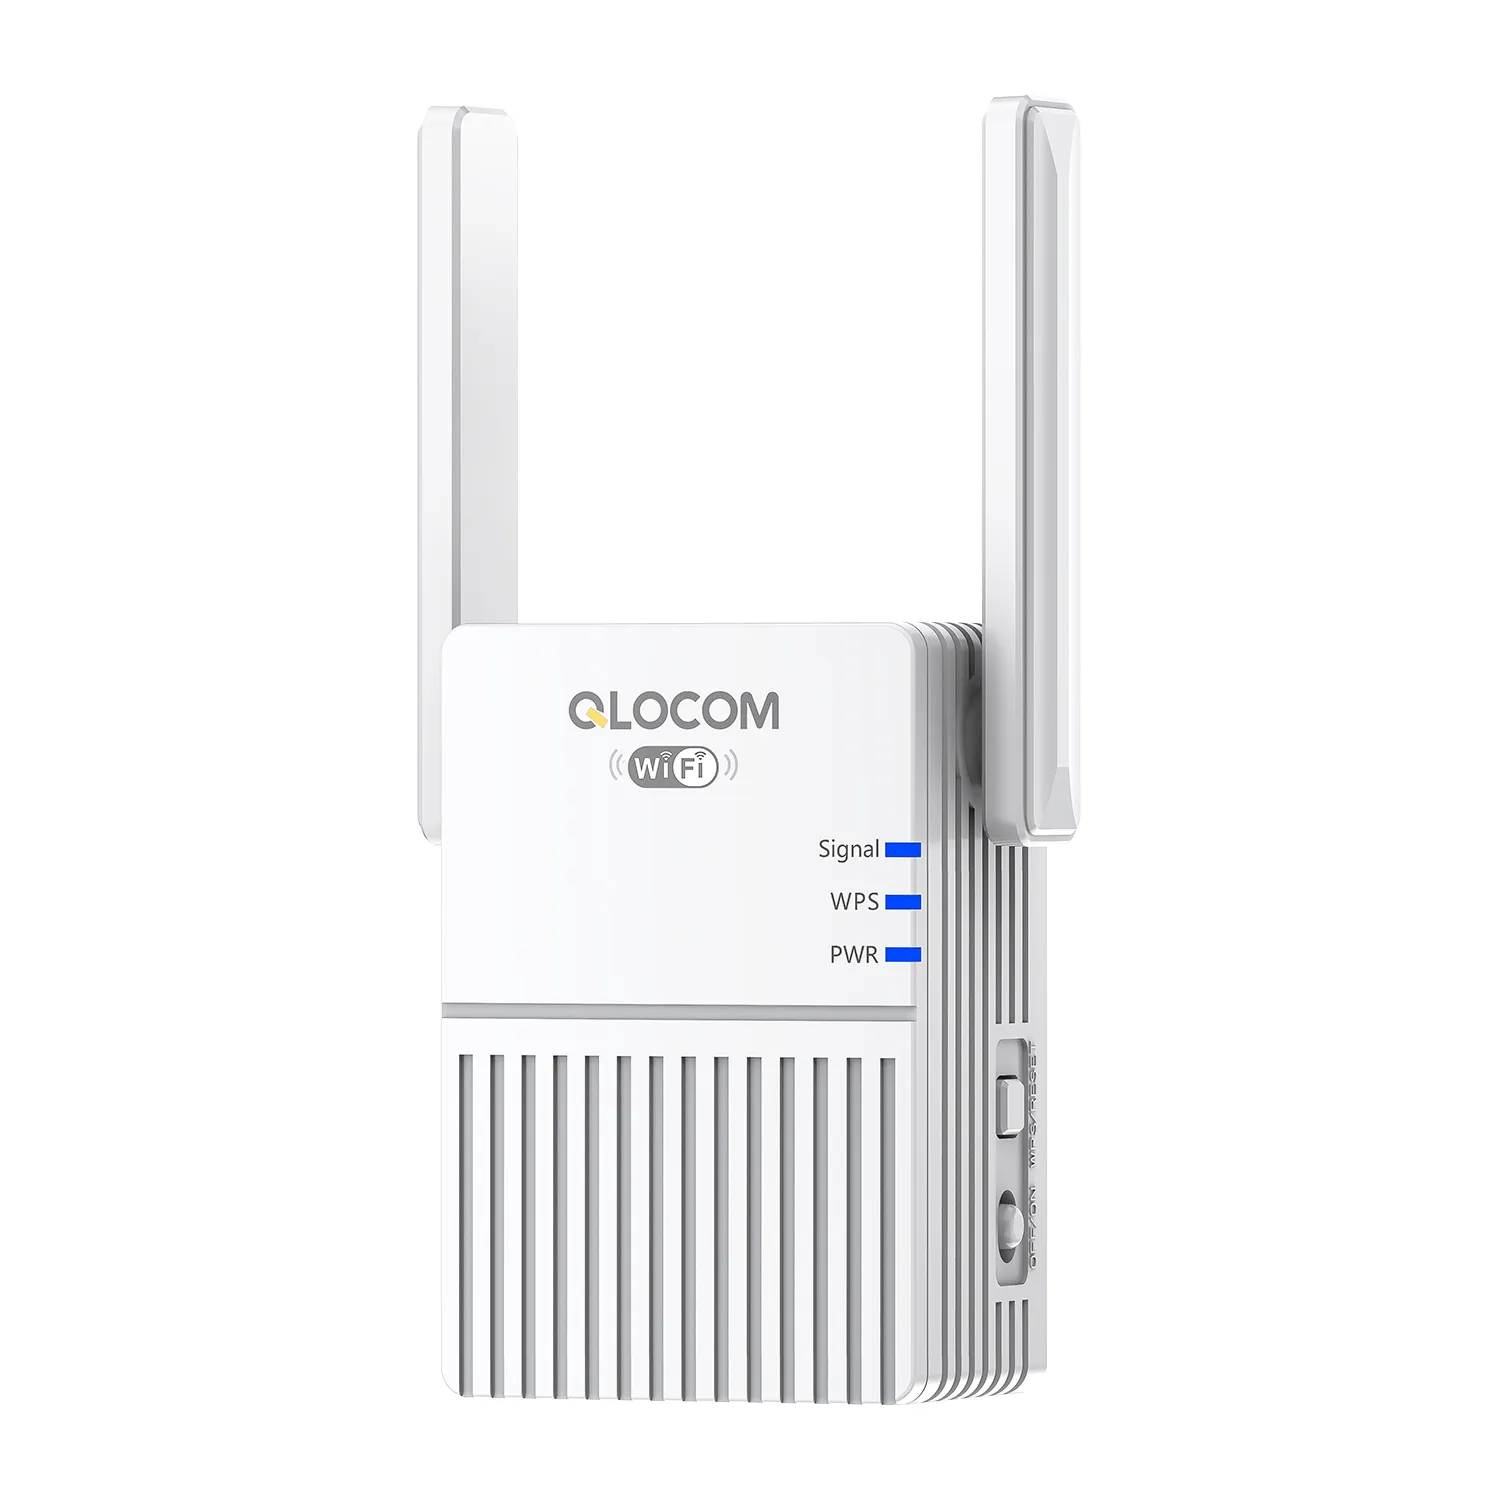 QLOCOM वायरलेस सिग्नल 300Mbps बूस्टर 1 लैन पोर्ट एपी वाईफ़ाई रिपीटर एक्सटेंडर मिनी राउटर CE FCC RoHS प्रमाणन के साथ